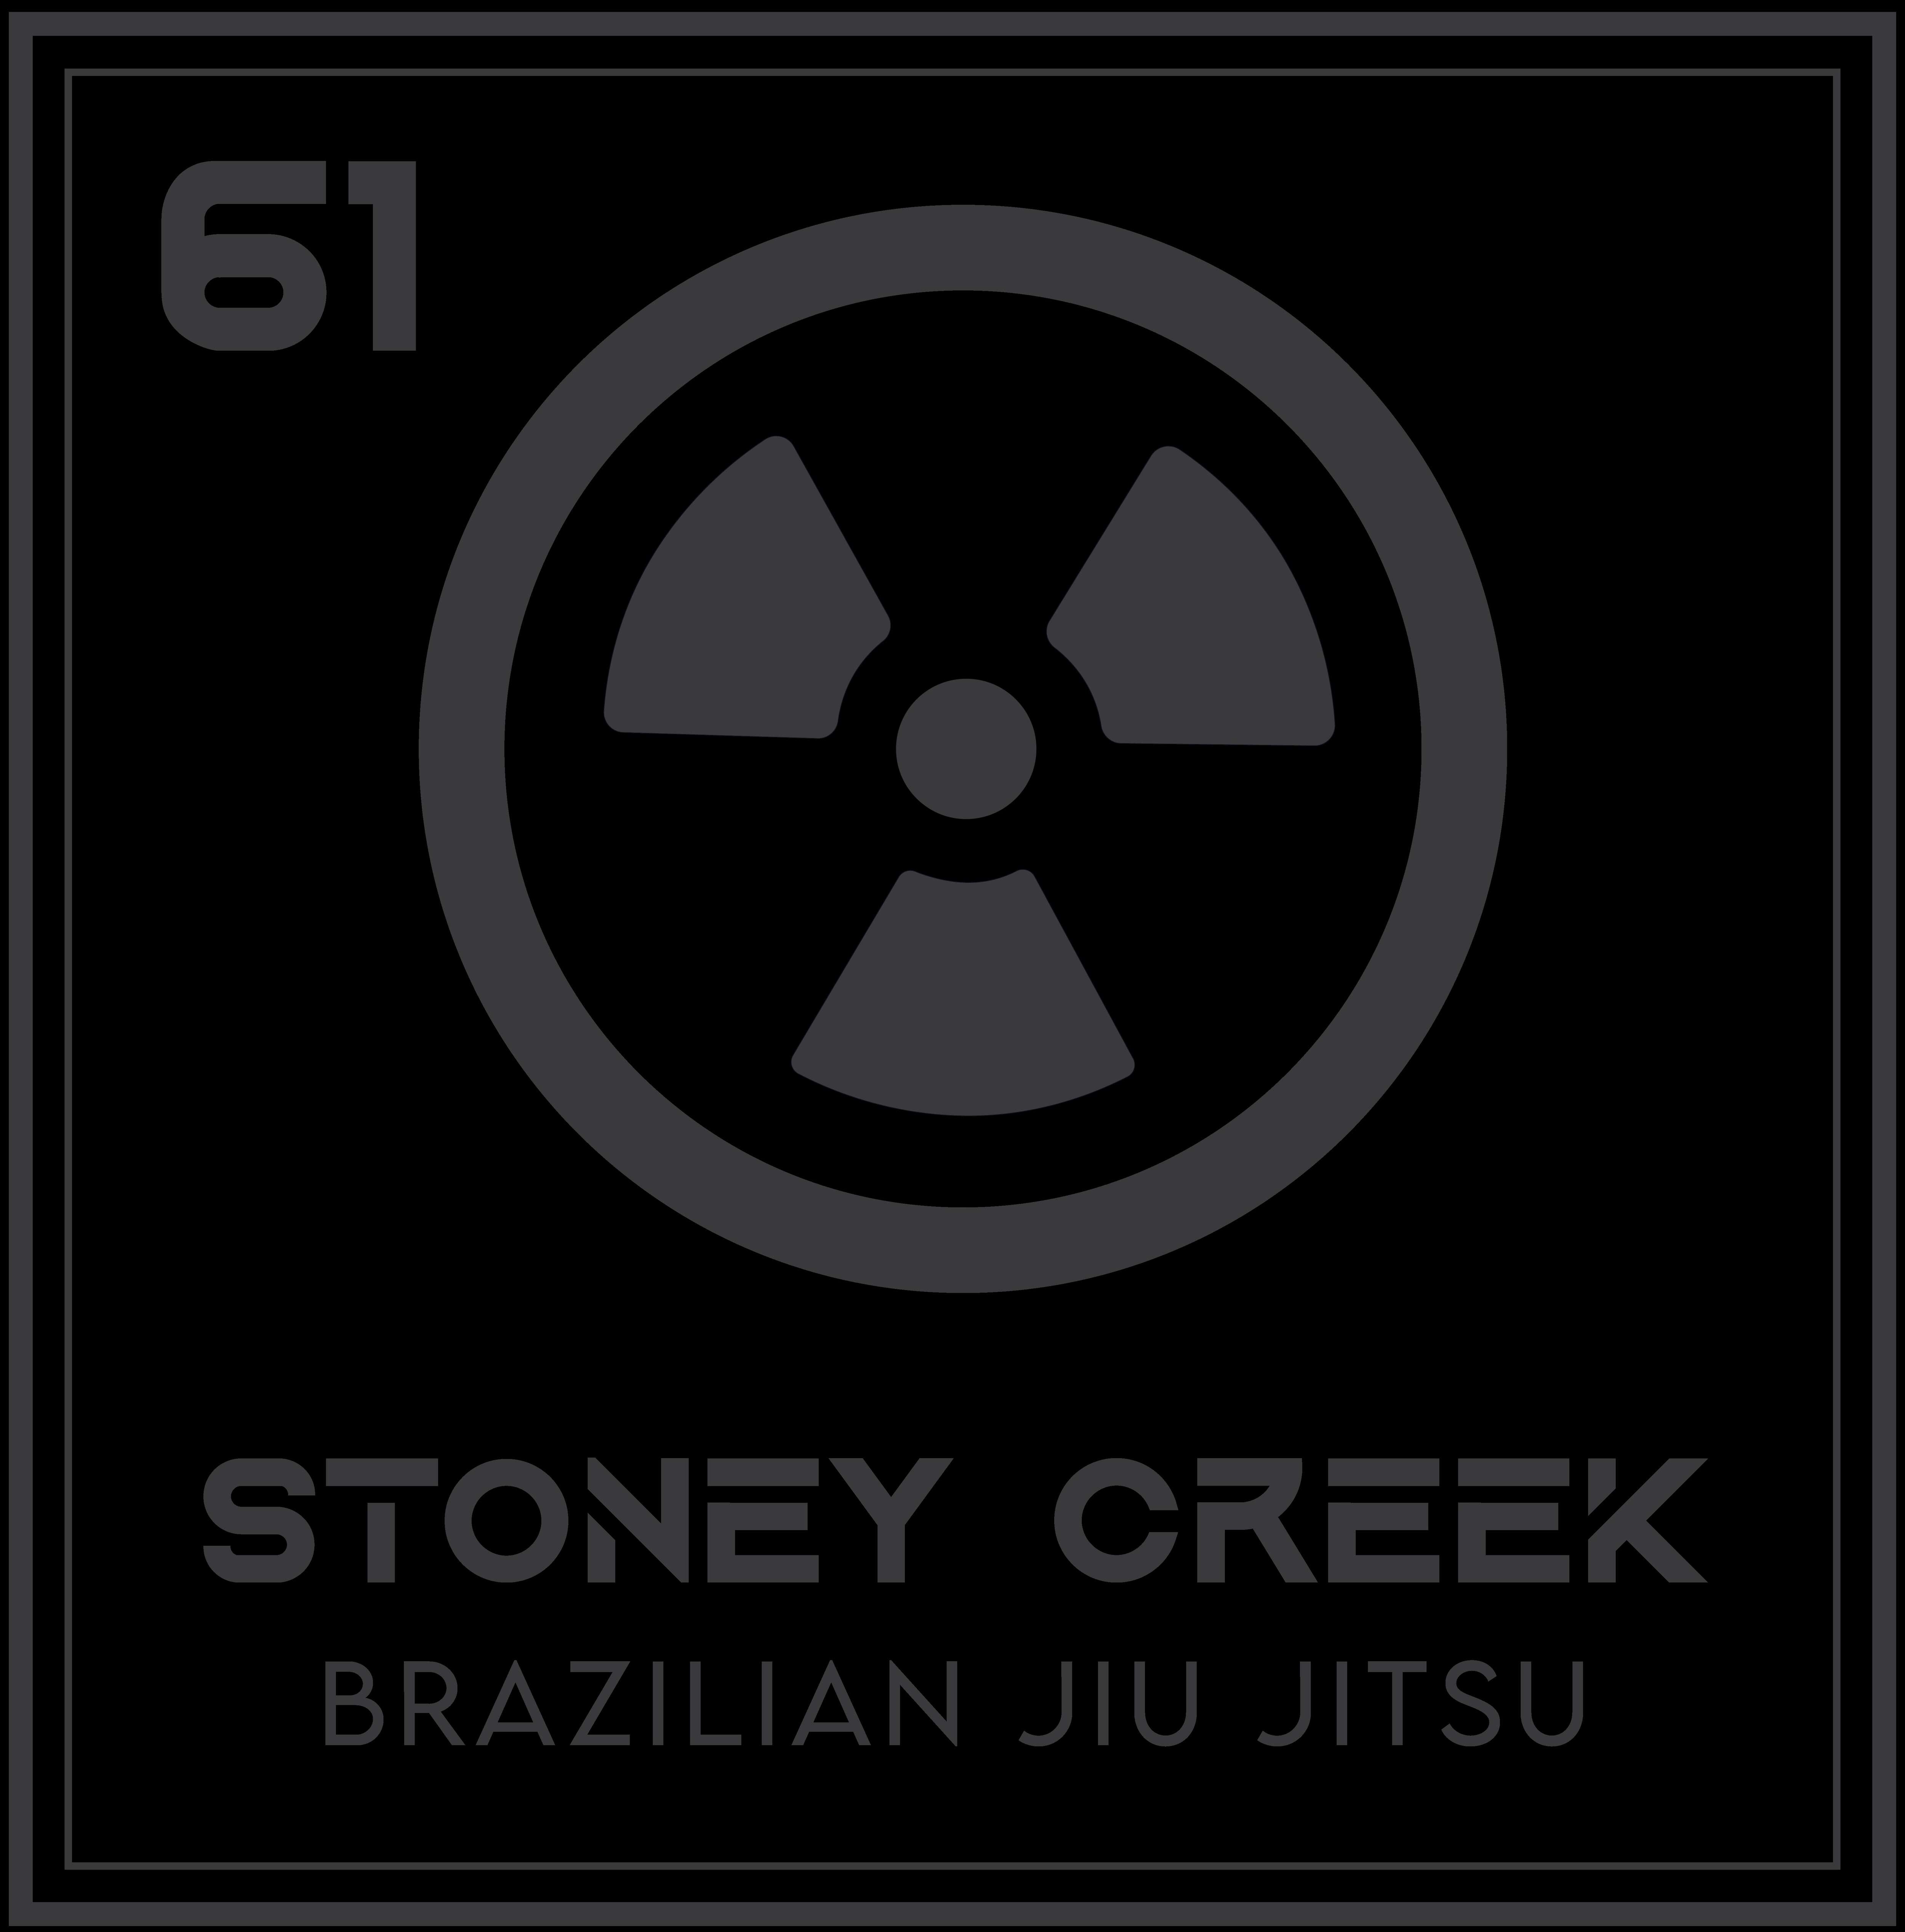 Stoney Creek Brazilian Jiu Jitsu